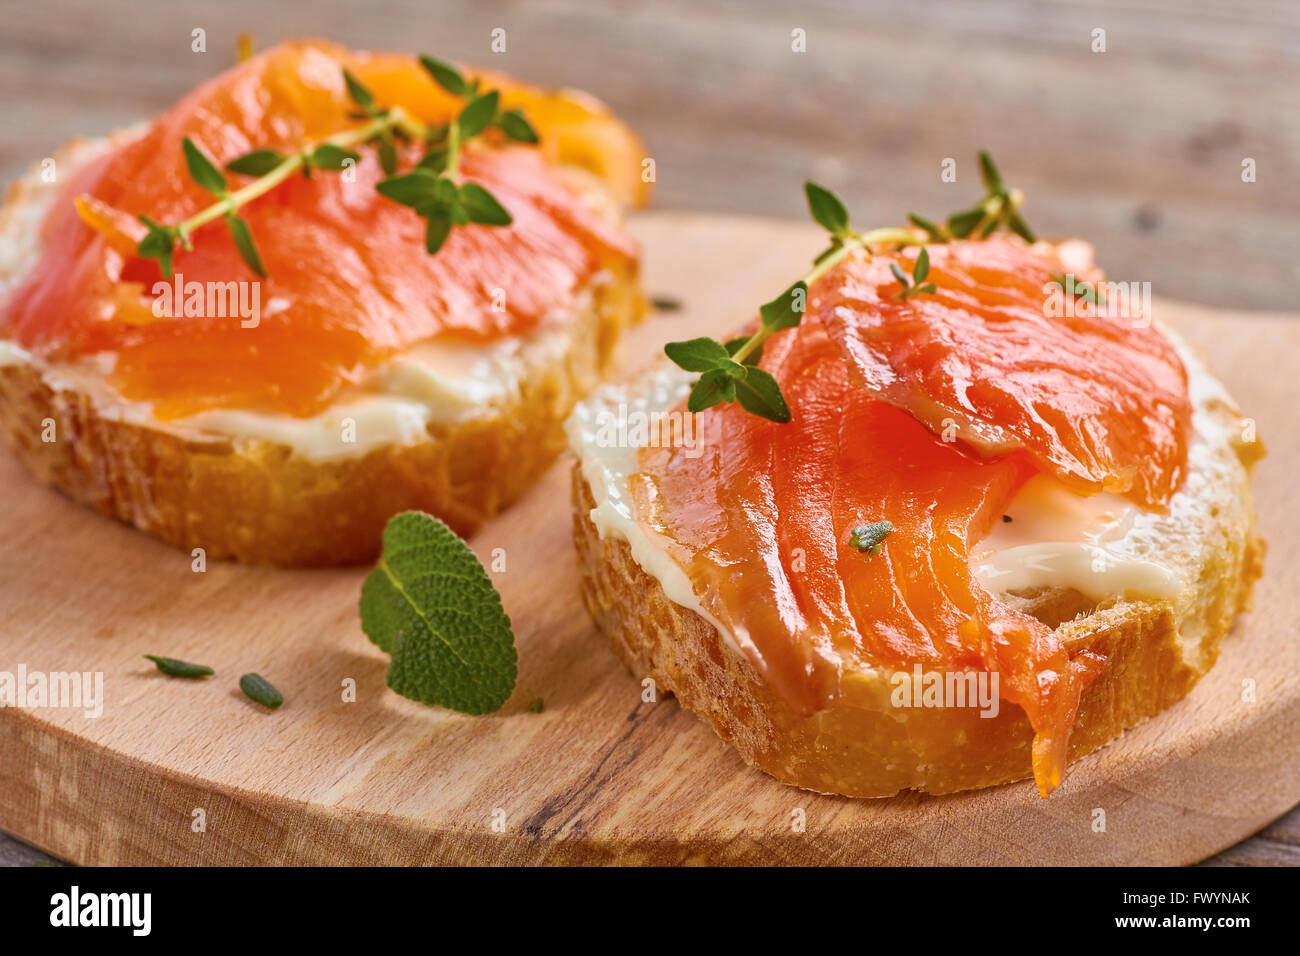 Délicieux sandwich au saumon fumé Banque D'Images